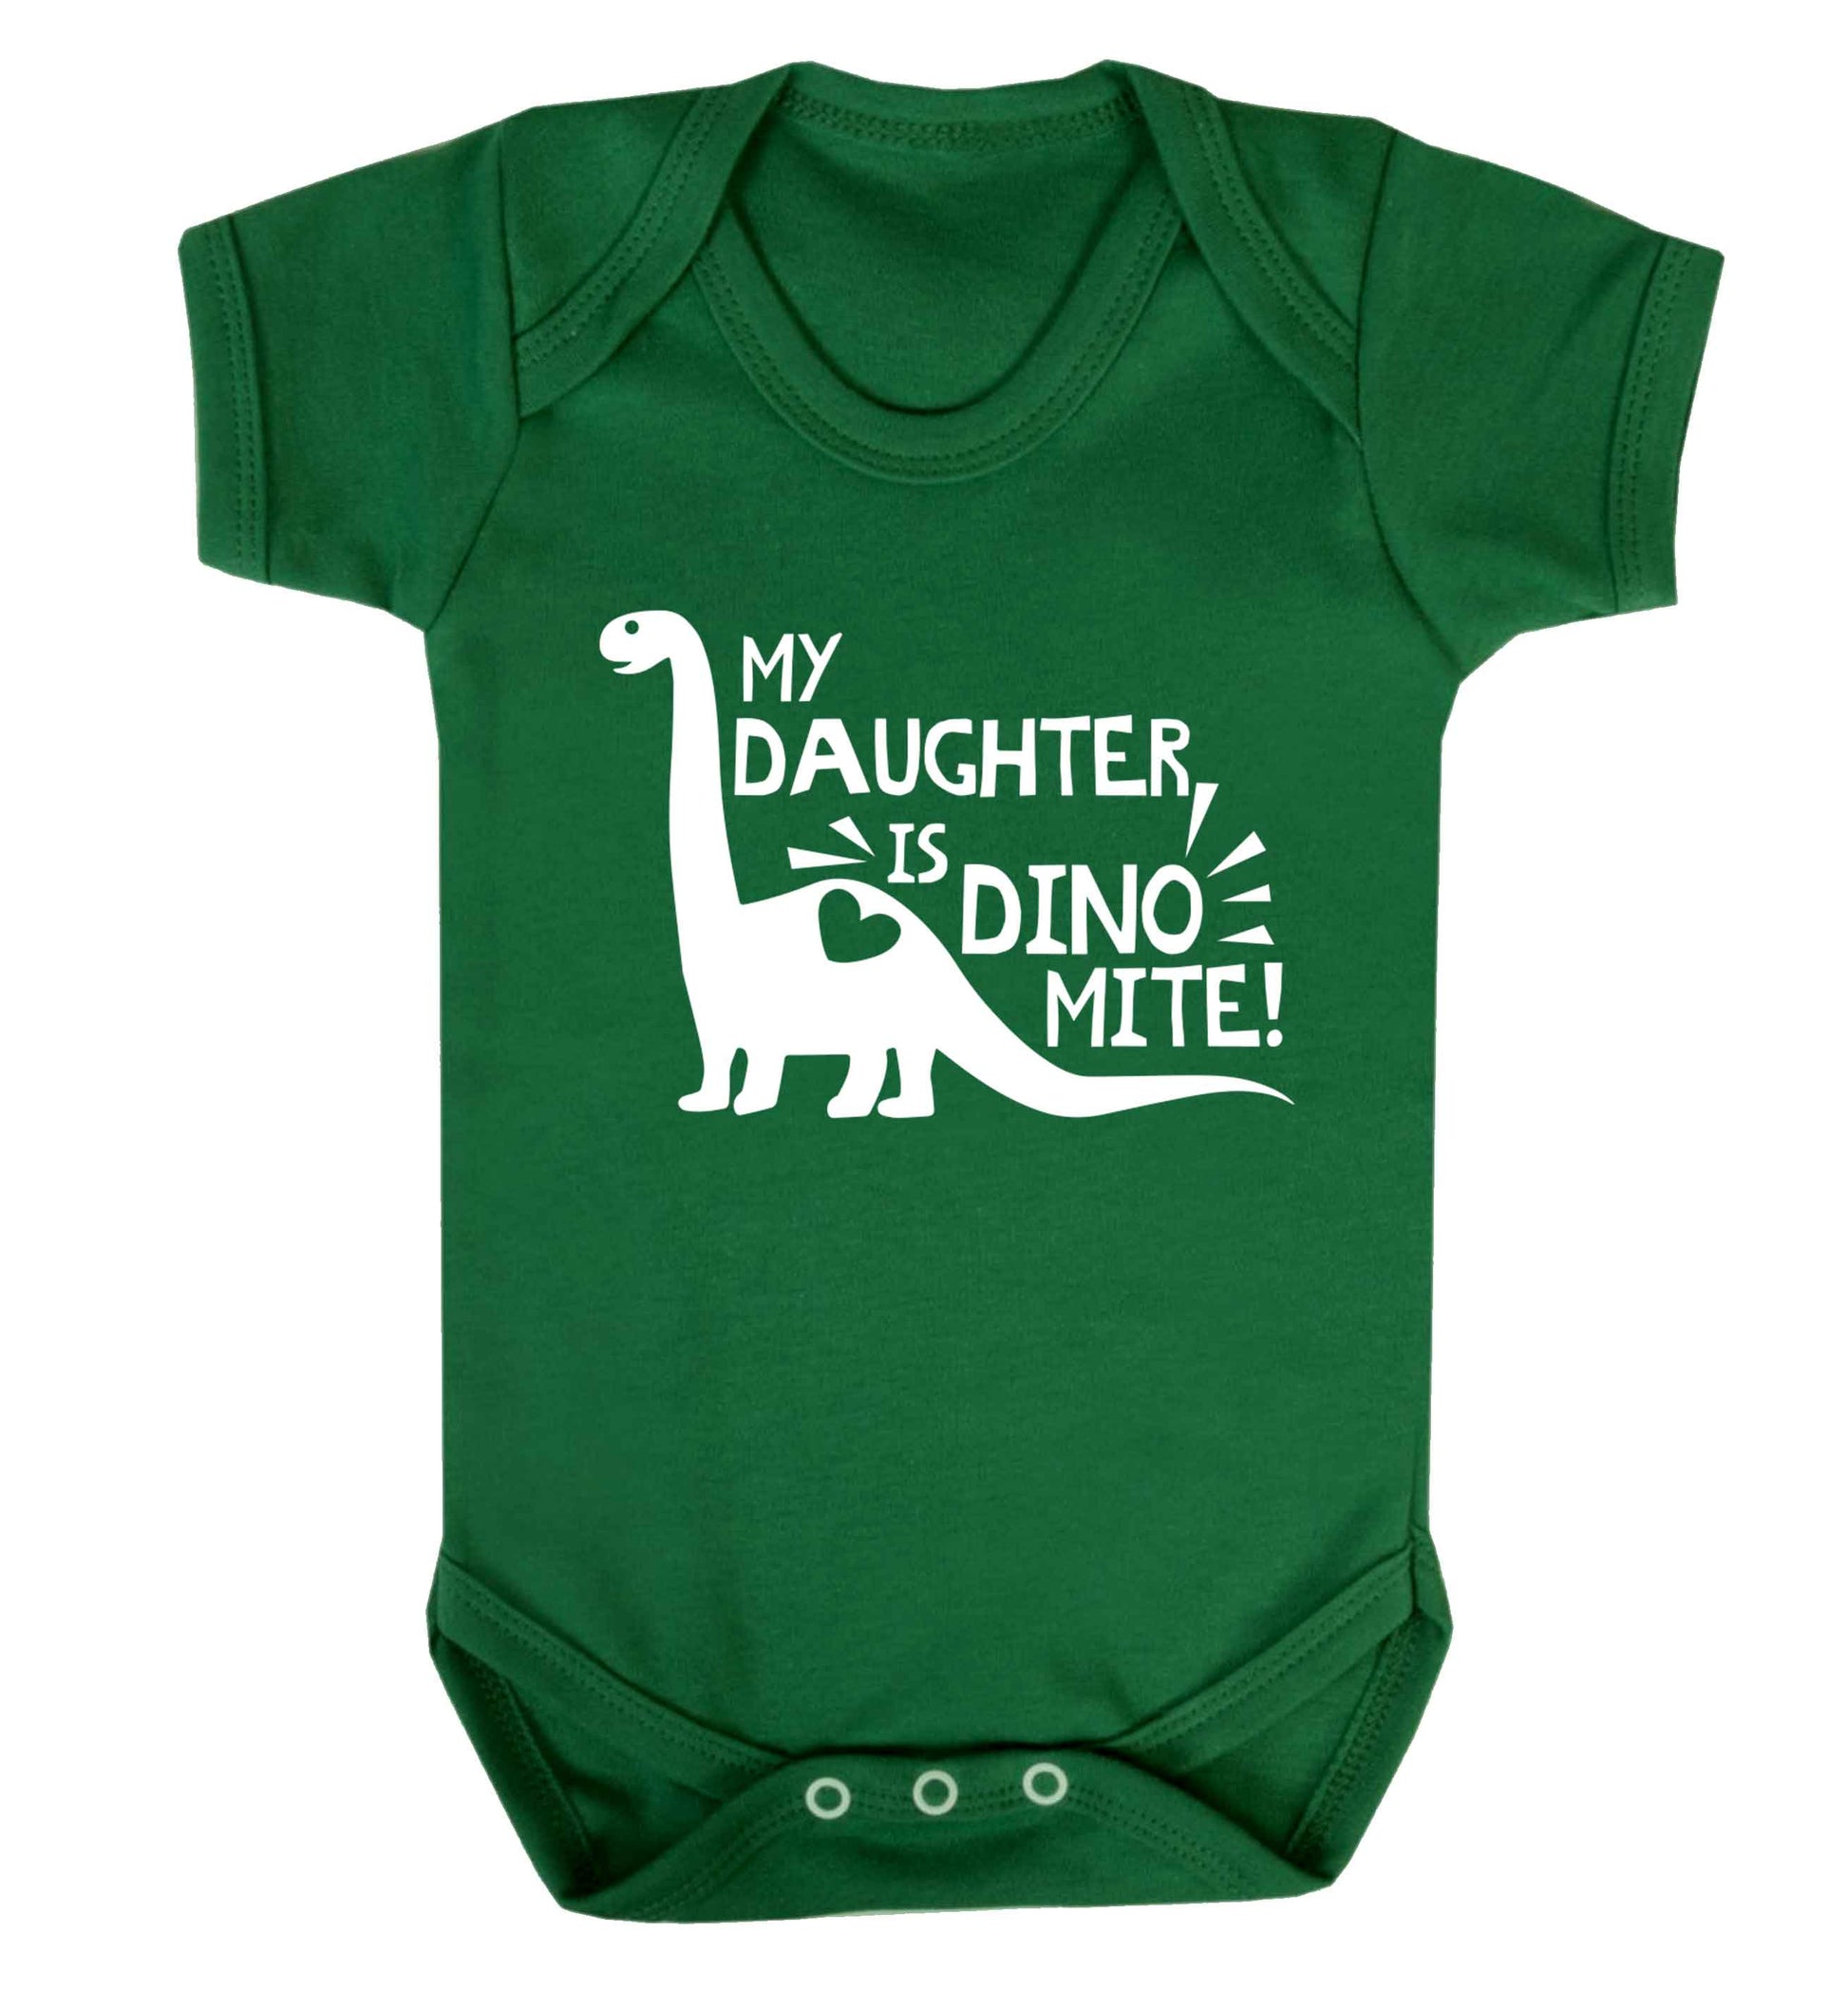 My daughter is dinomite! Baby Vest green 18-24 months